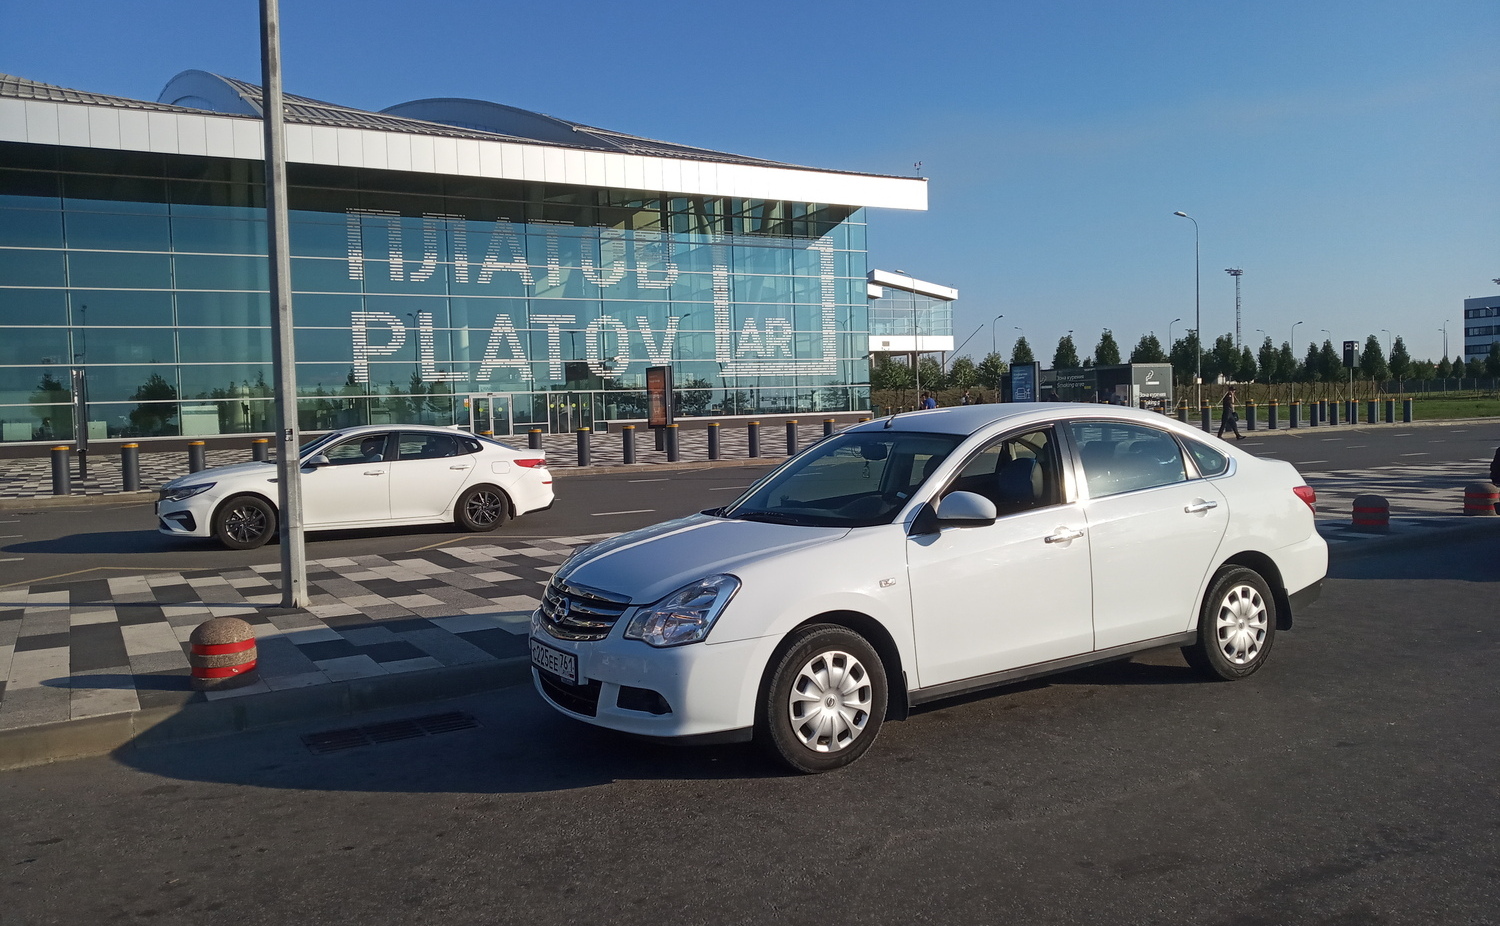 Волгодонск-аэропорт Платов